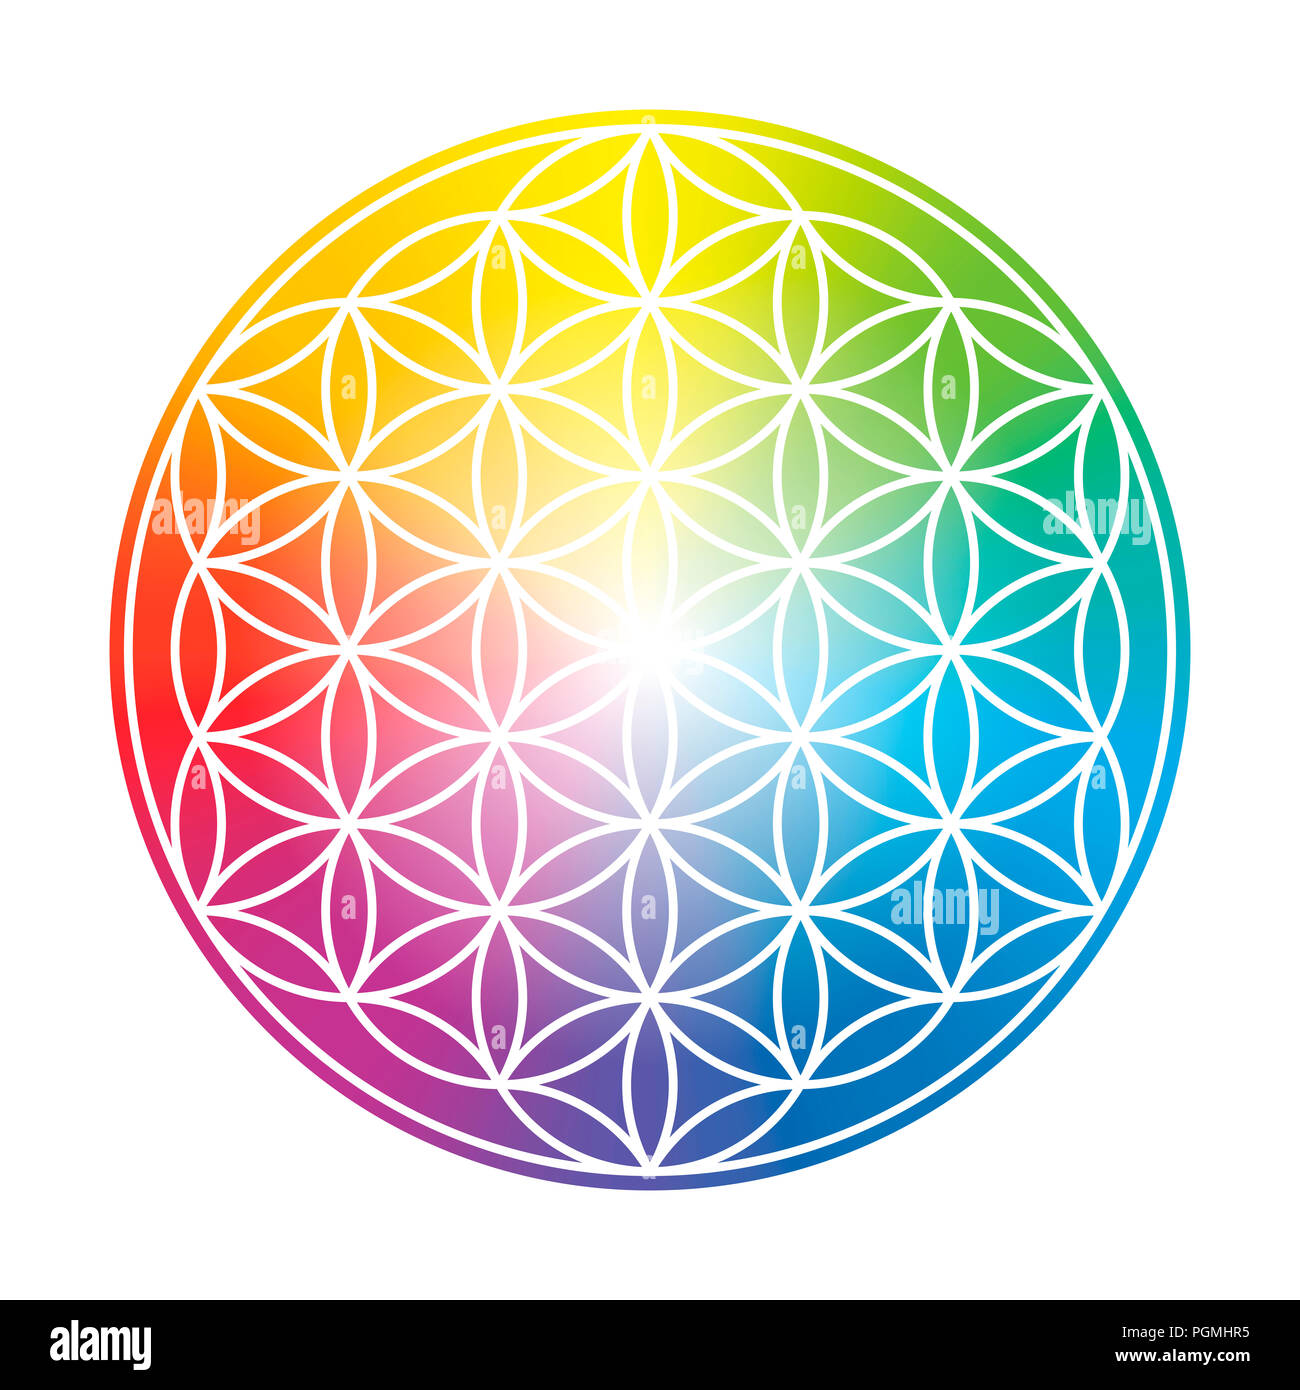 La flor de la vida. Colorido arco iris circular símbolo de gradiente sobre fondo blanco. Foto de stock